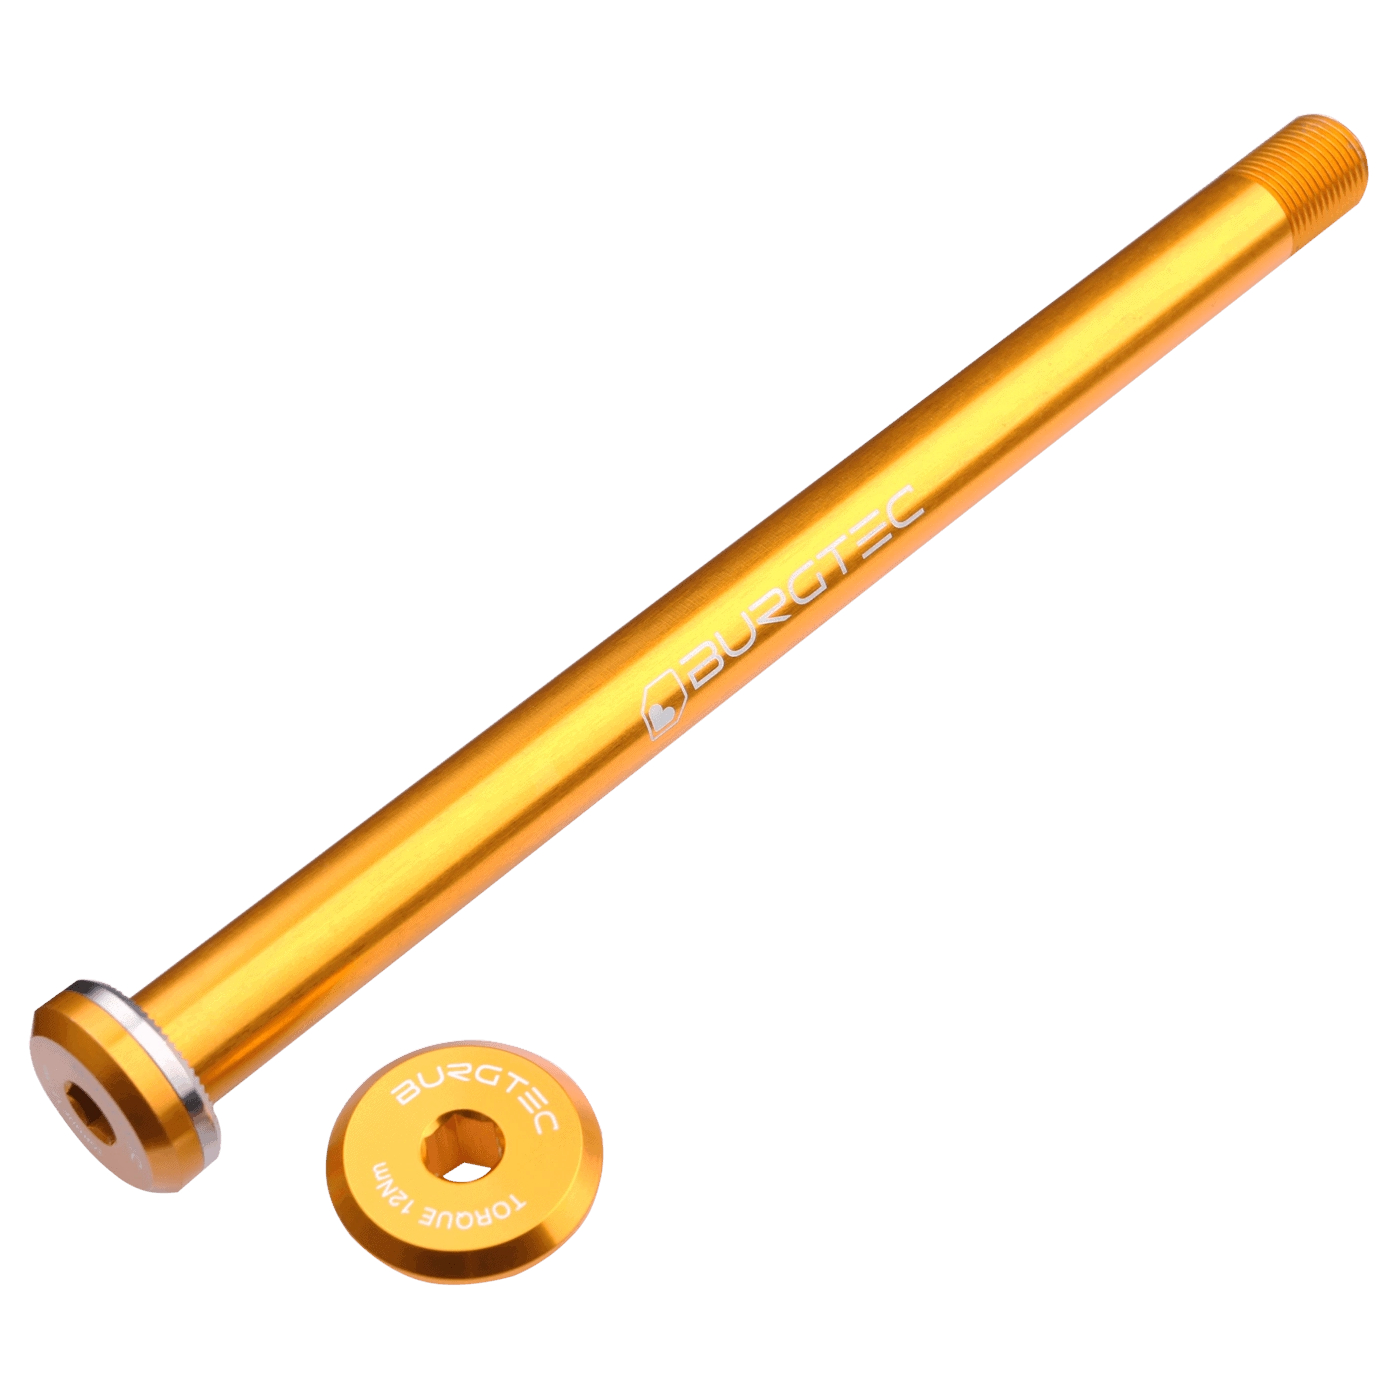 Bild von Burgtec Steckachse - 12x148mm Boost - für Santa Cruz Ausfallenden / 168,5mm - Burgtec Bullion Gold